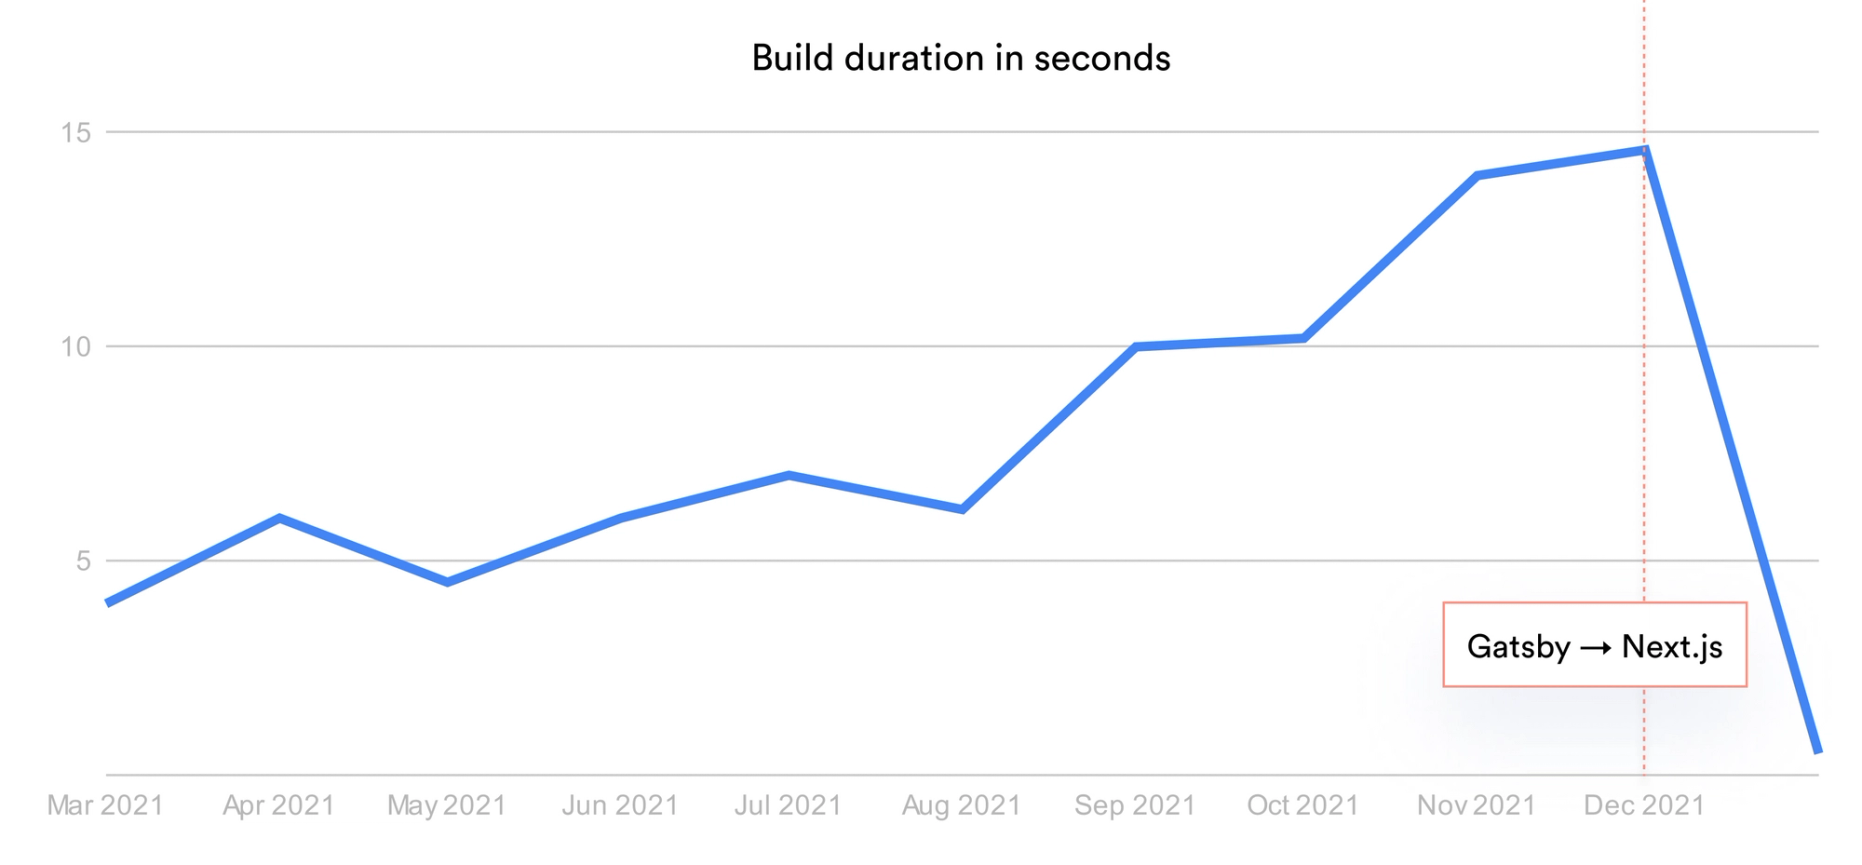 Build duration after Next.js